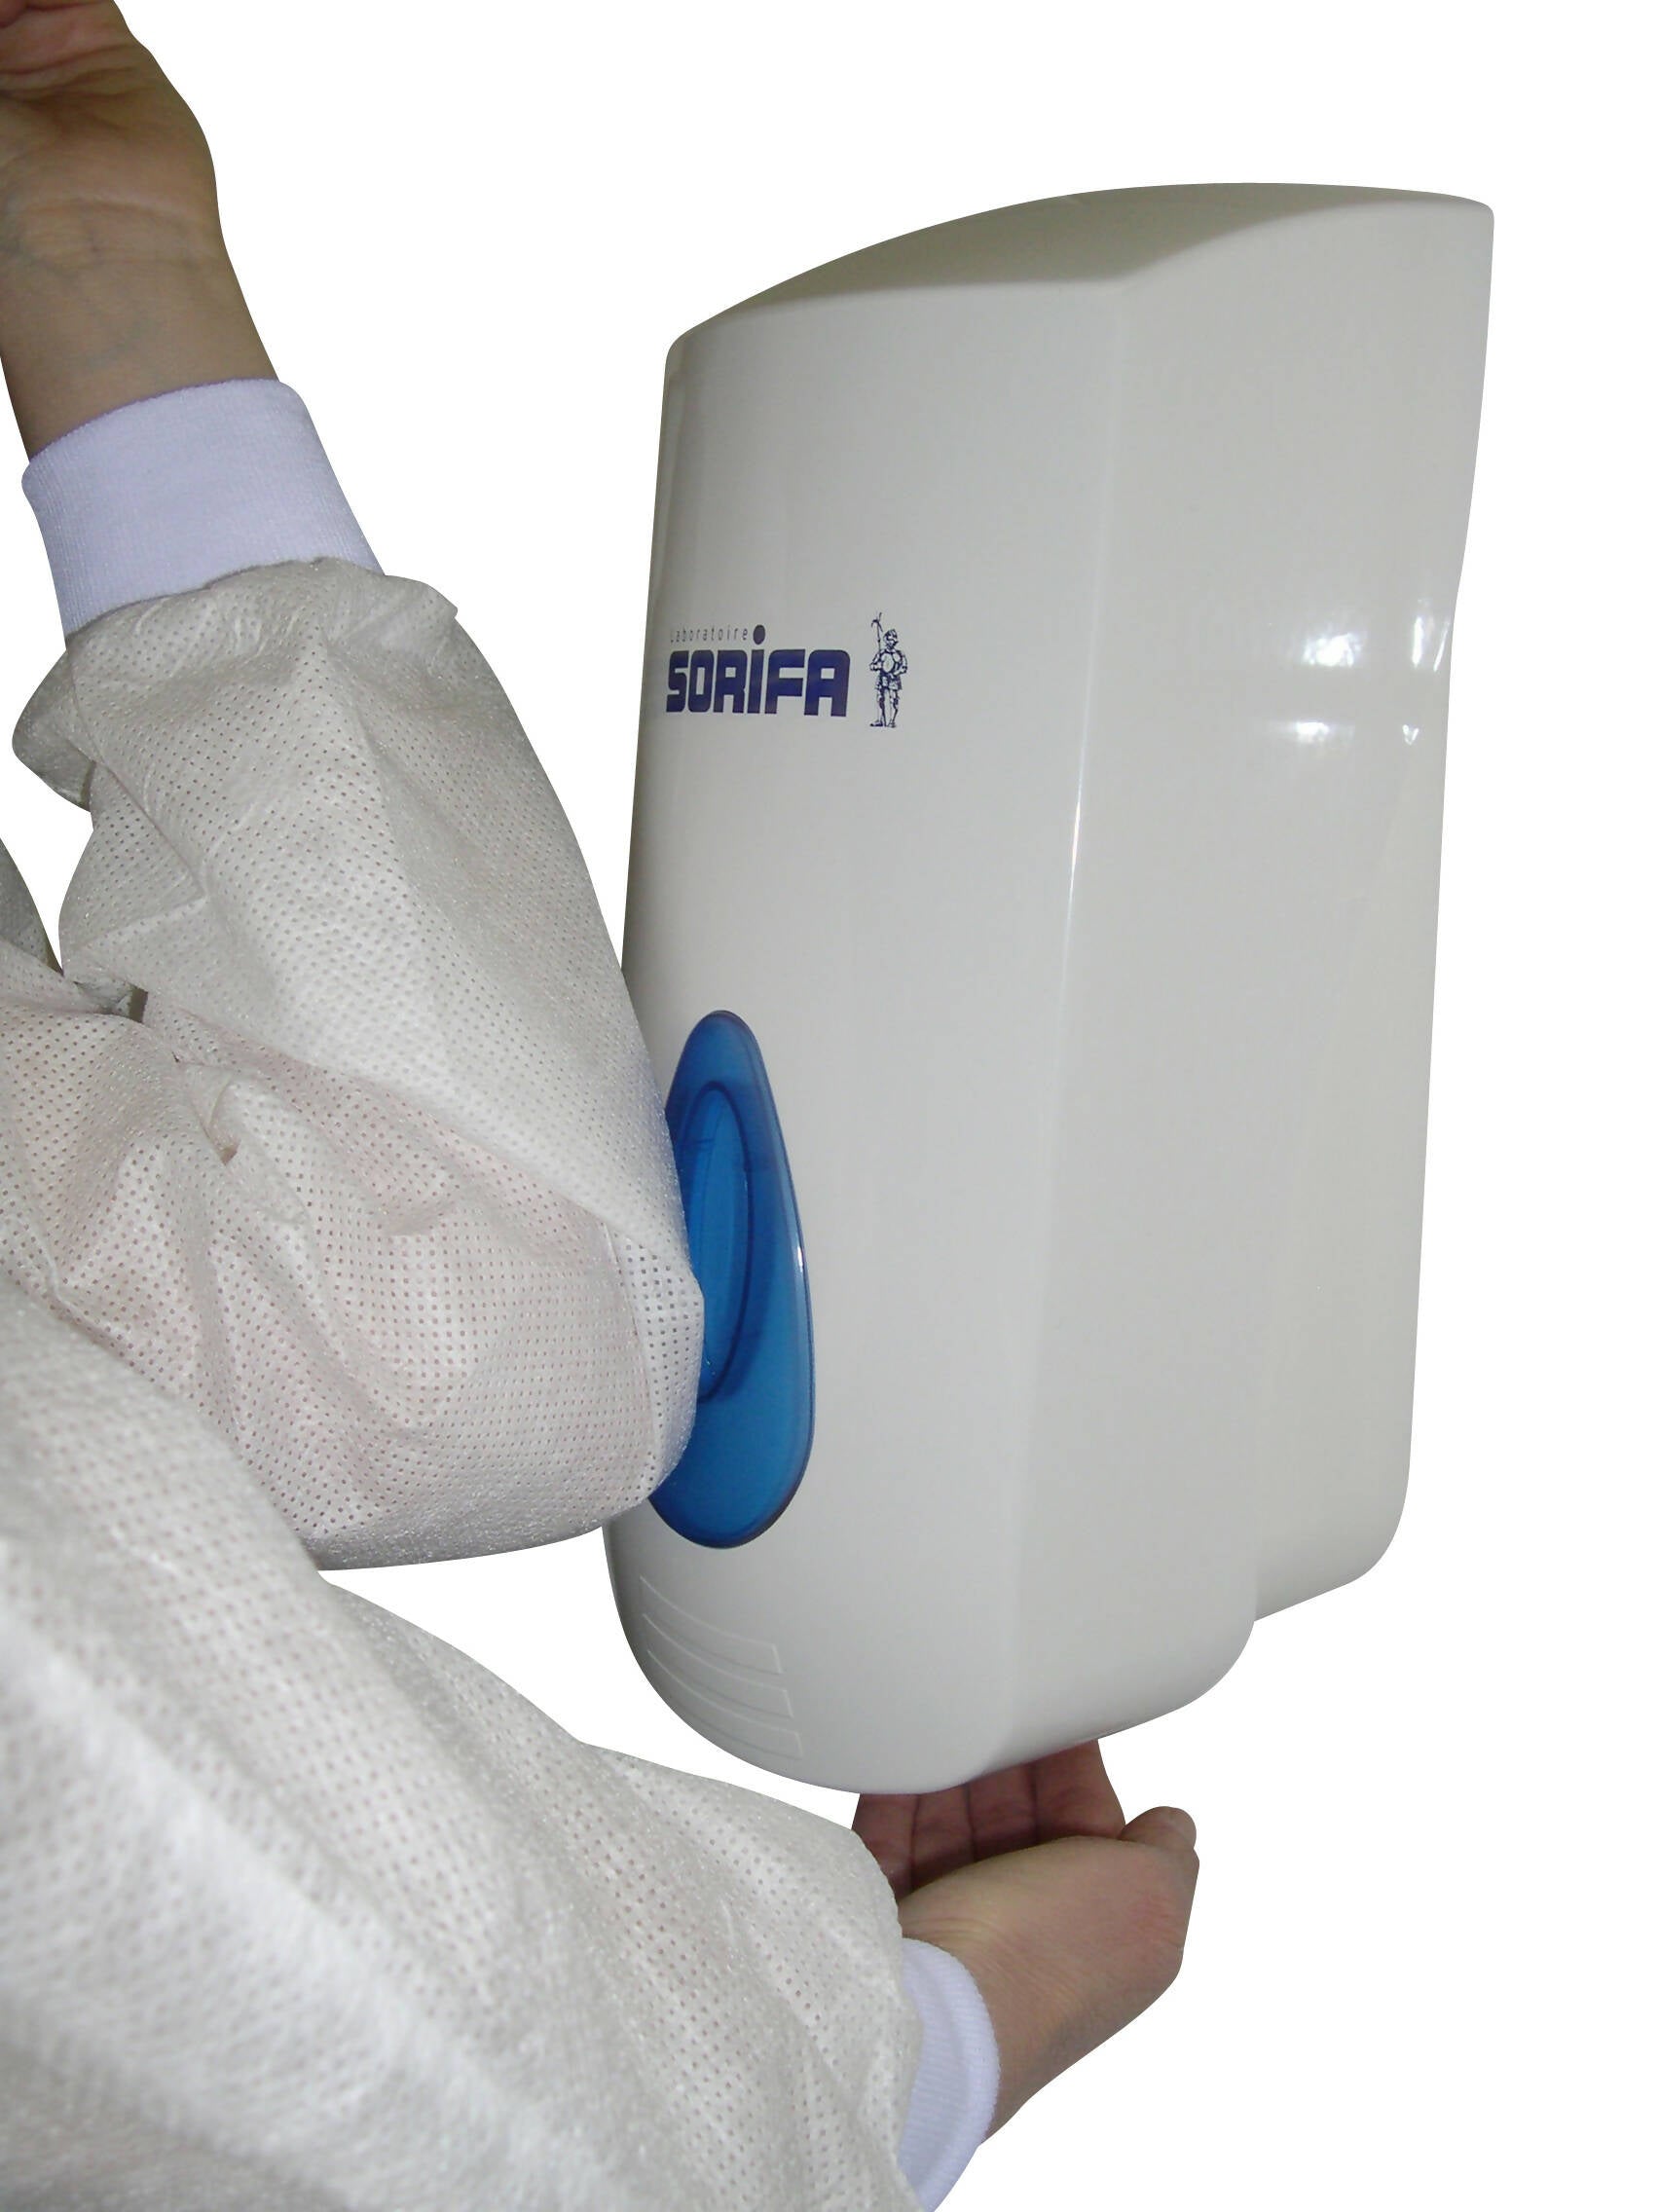 SORIFA – 2er-Set – Robuster, ergonomischer, abschließbarer Wandspender aus Metall für 1L-Flasche der Marke SORIFA – Für Gele und Flüssigseifen.